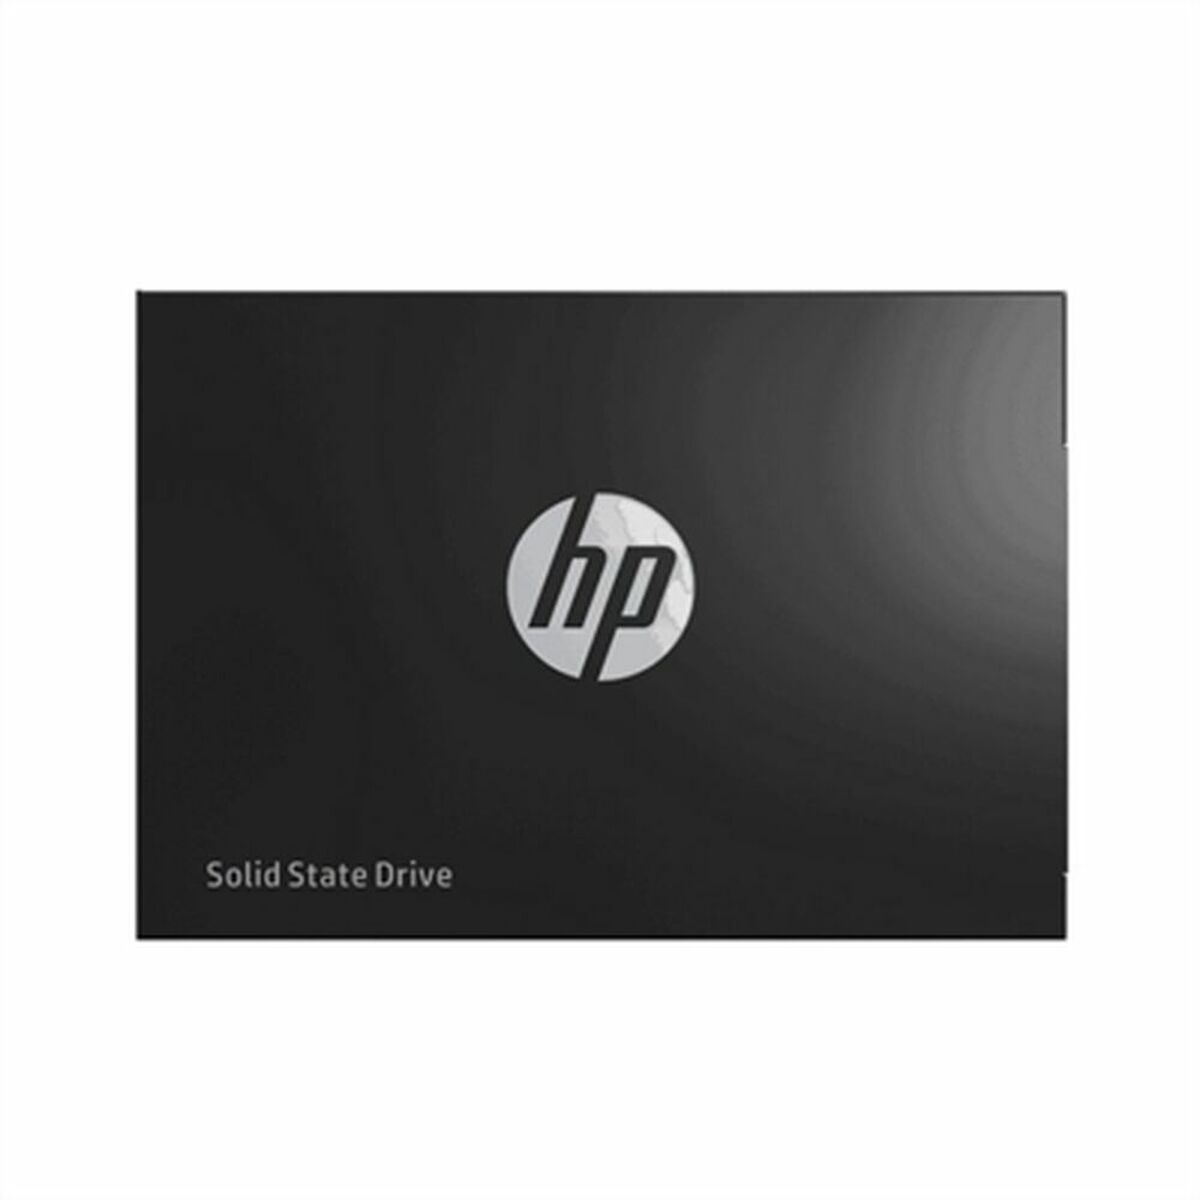 HP 345M8AA, 240 SSD, intern GB